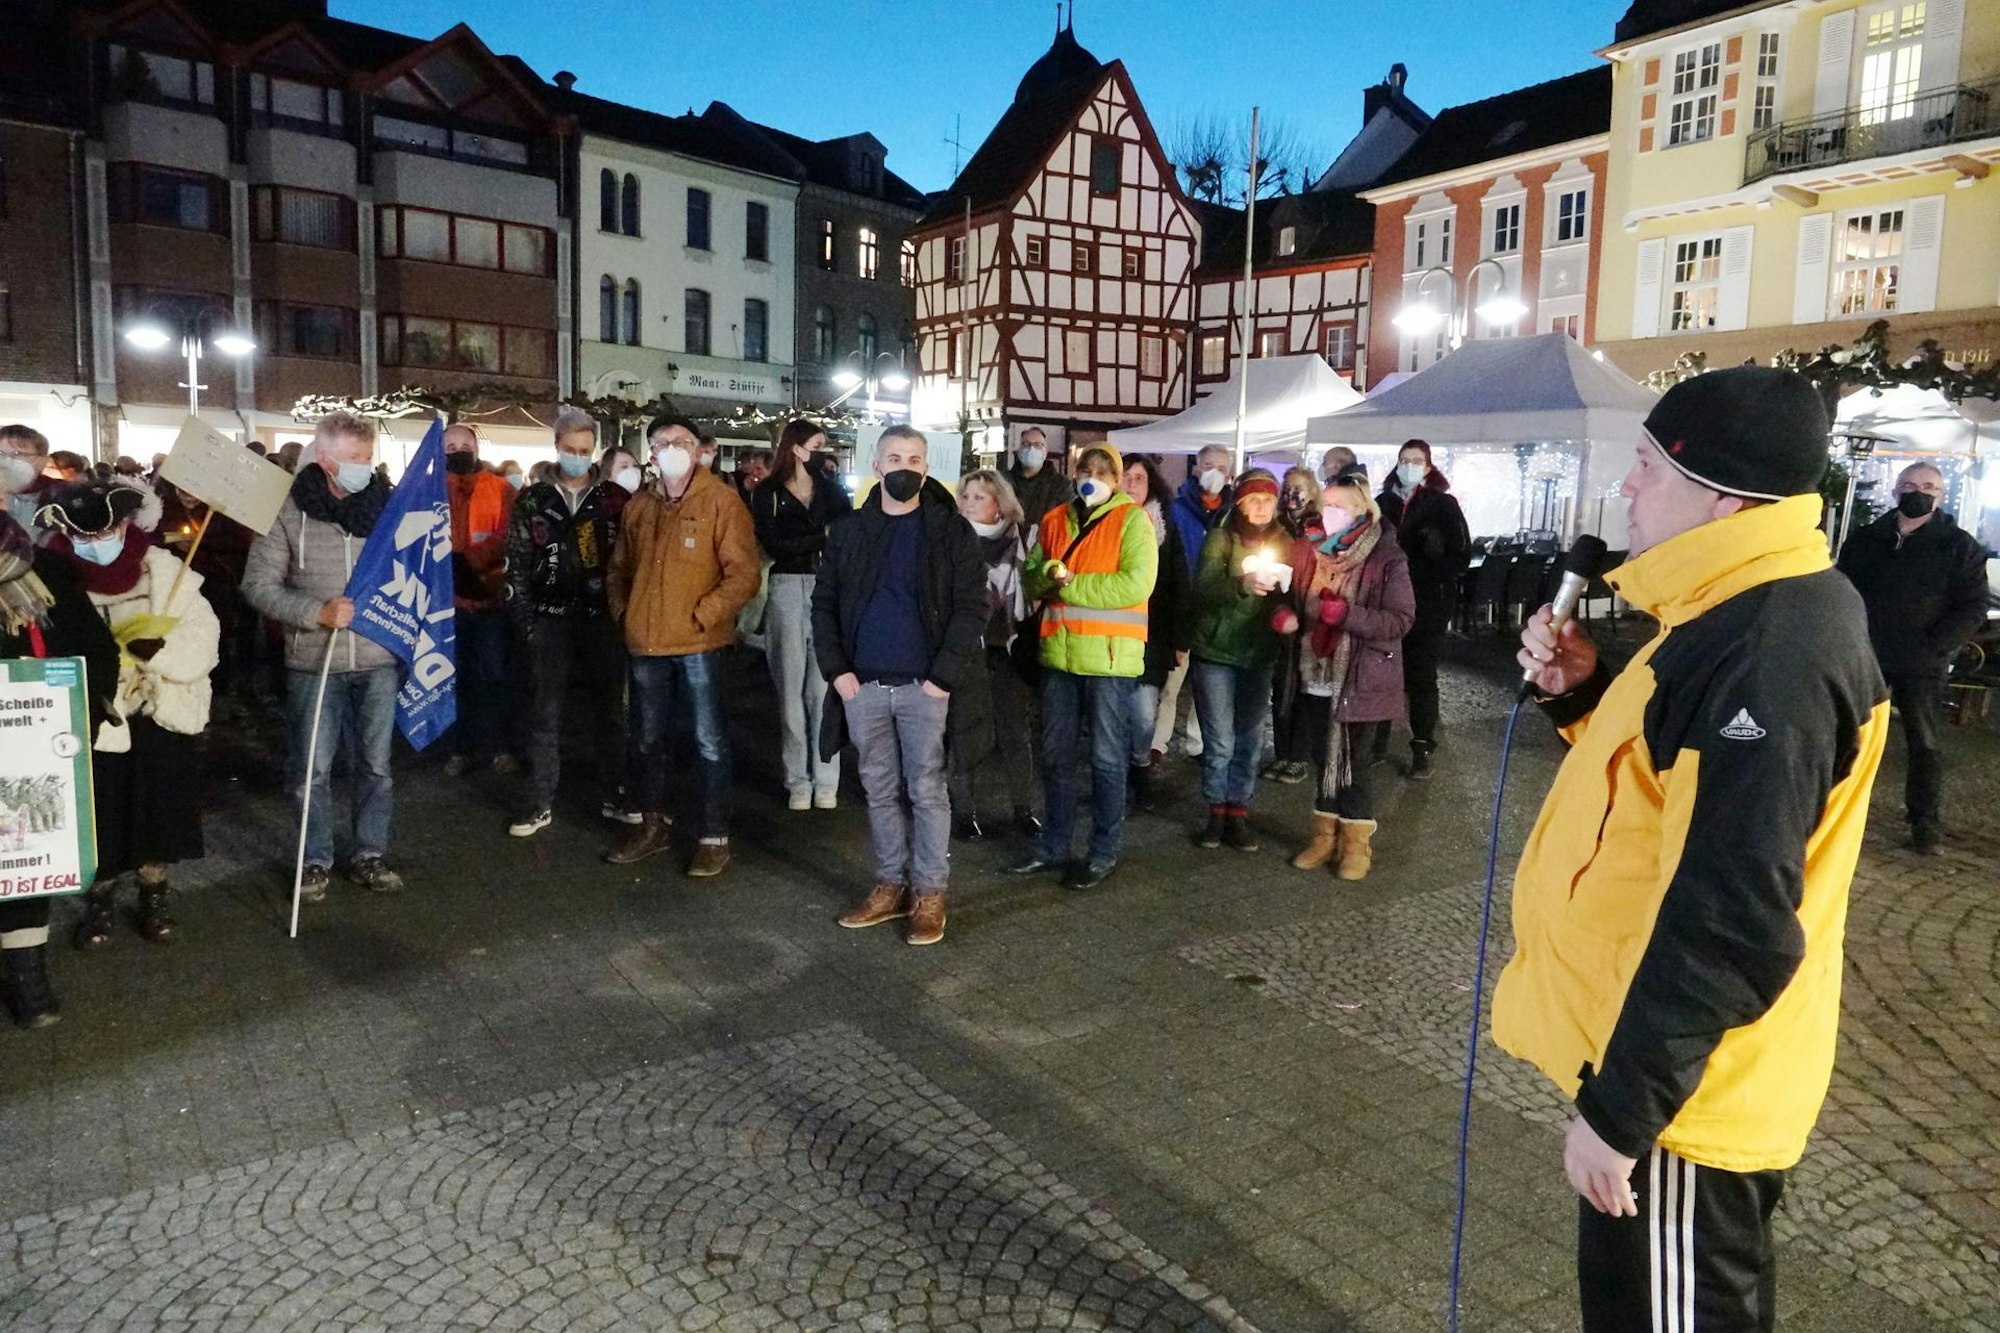 Euskirchens Bürgermeister Sacha Reichelt besuchte die Kundgebung auf dem Alten Markt und forderte die Teilnehmer auf, in ihrem Engagement für den Frieden Beharrlichkeit zu zeigen.